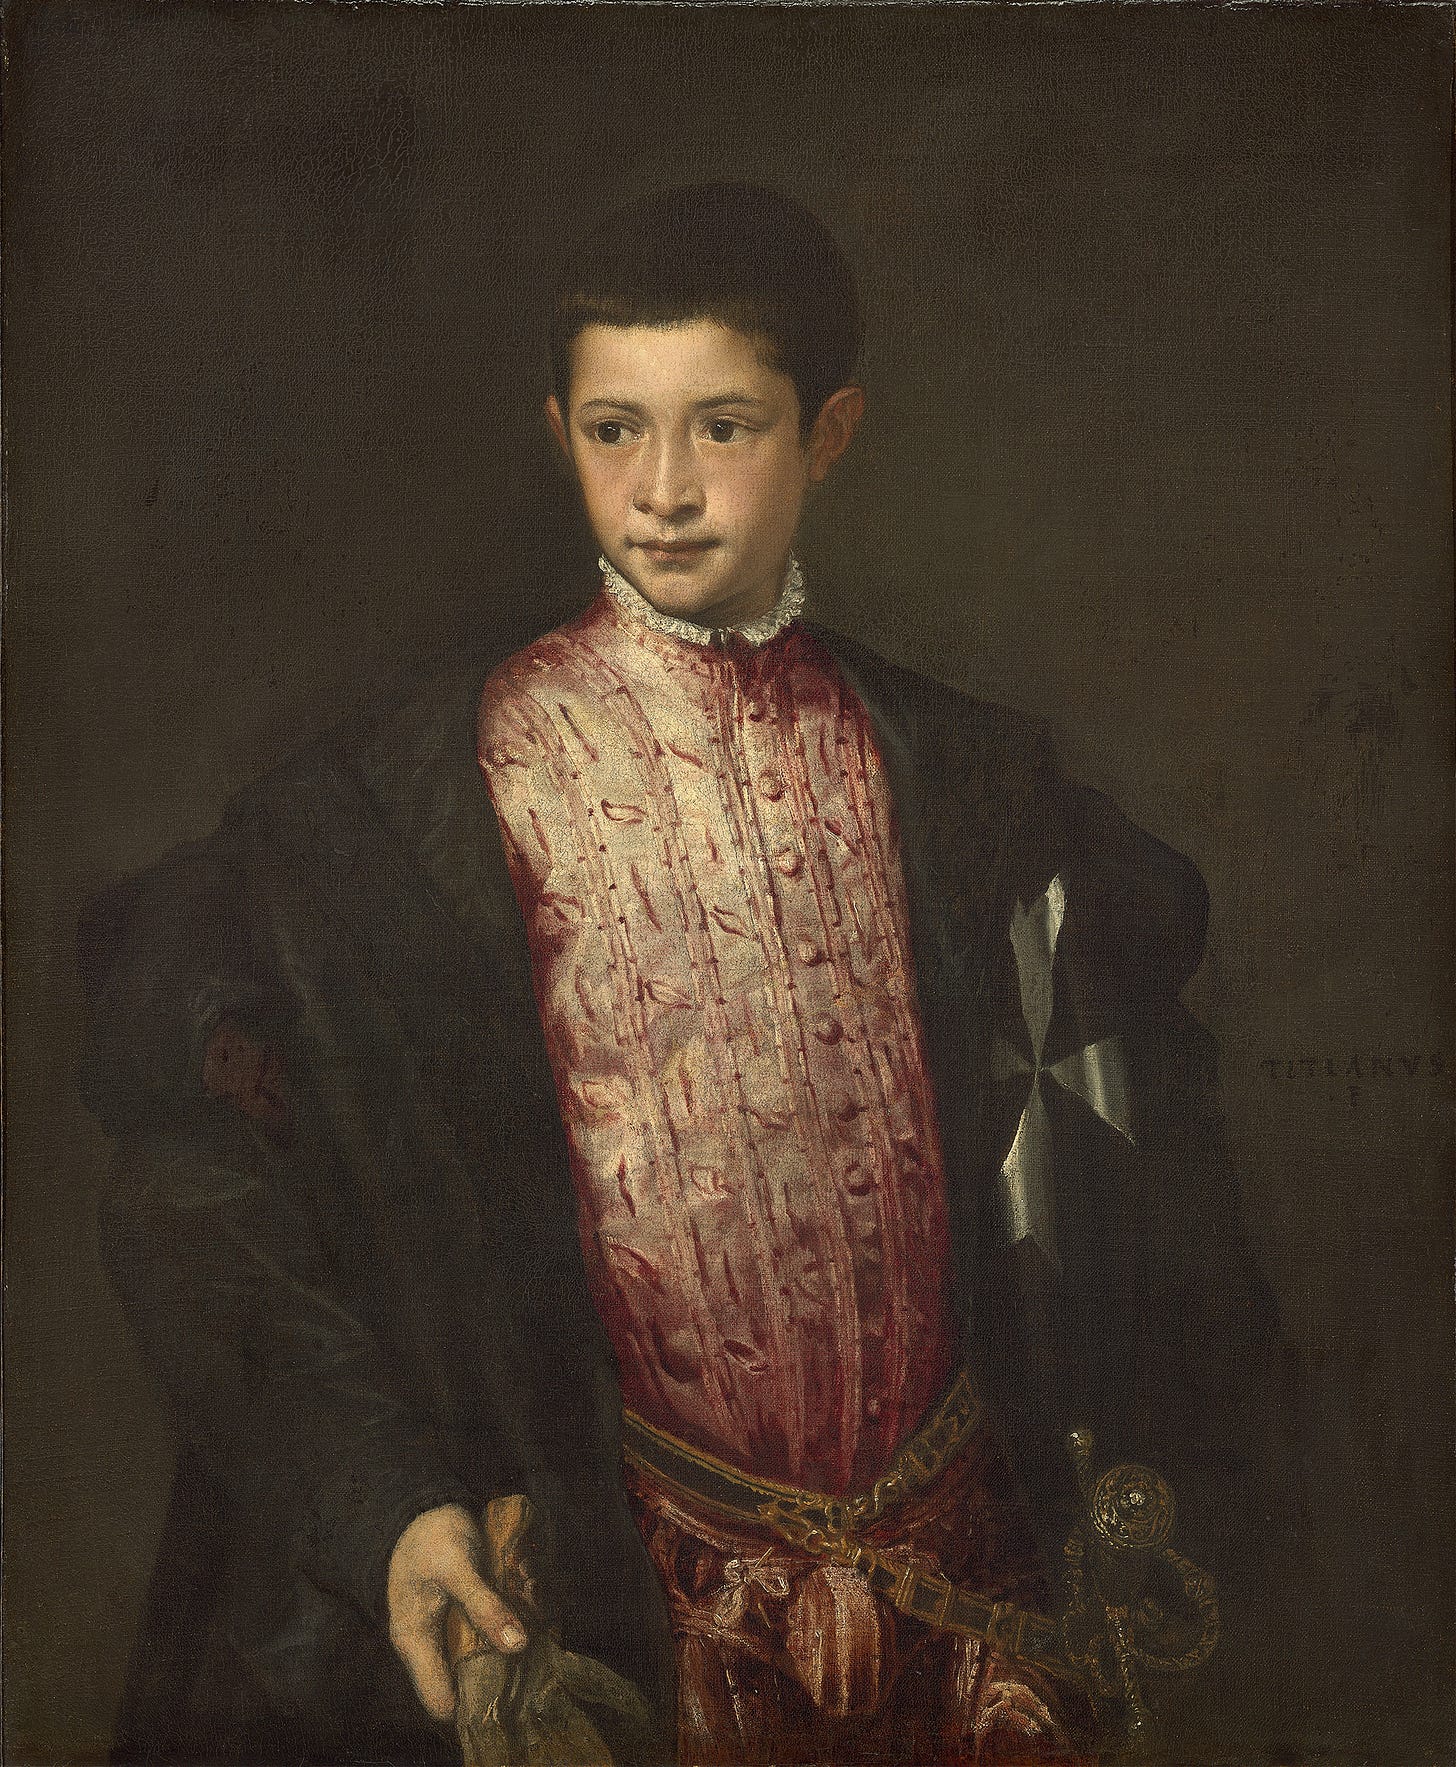 Ranuccio Farnese (1541-1542)